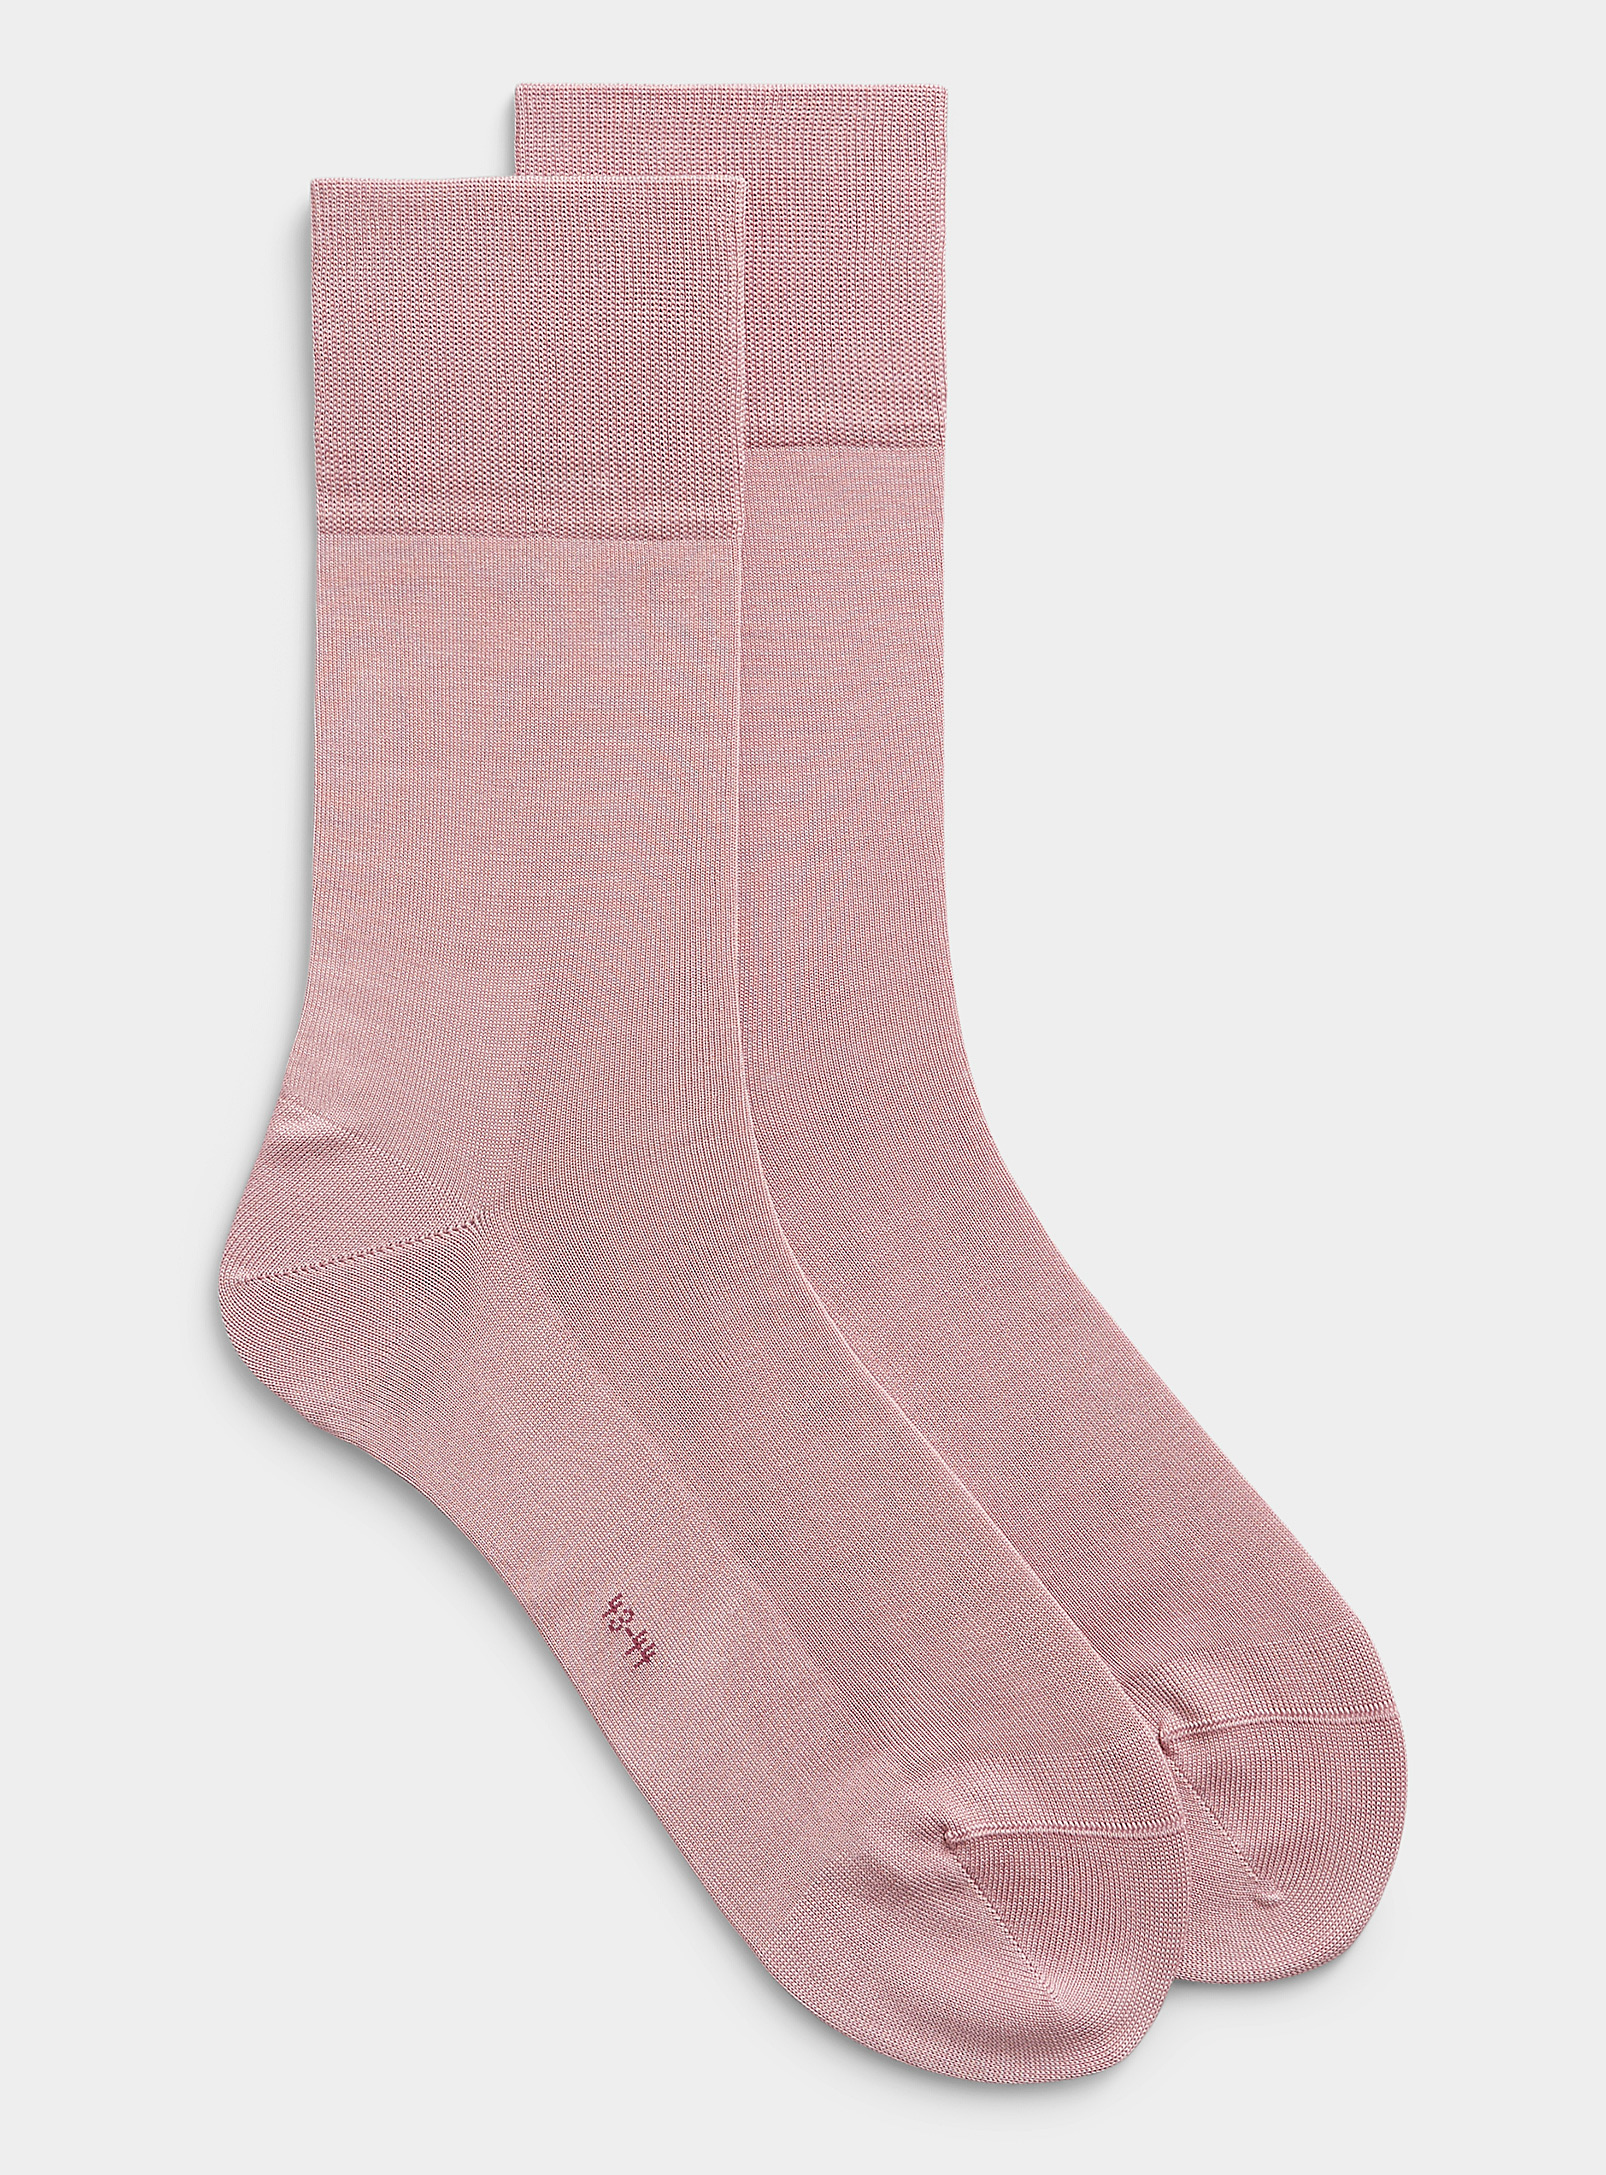 Falke Tiago Lisle Socks In Dusky Pink